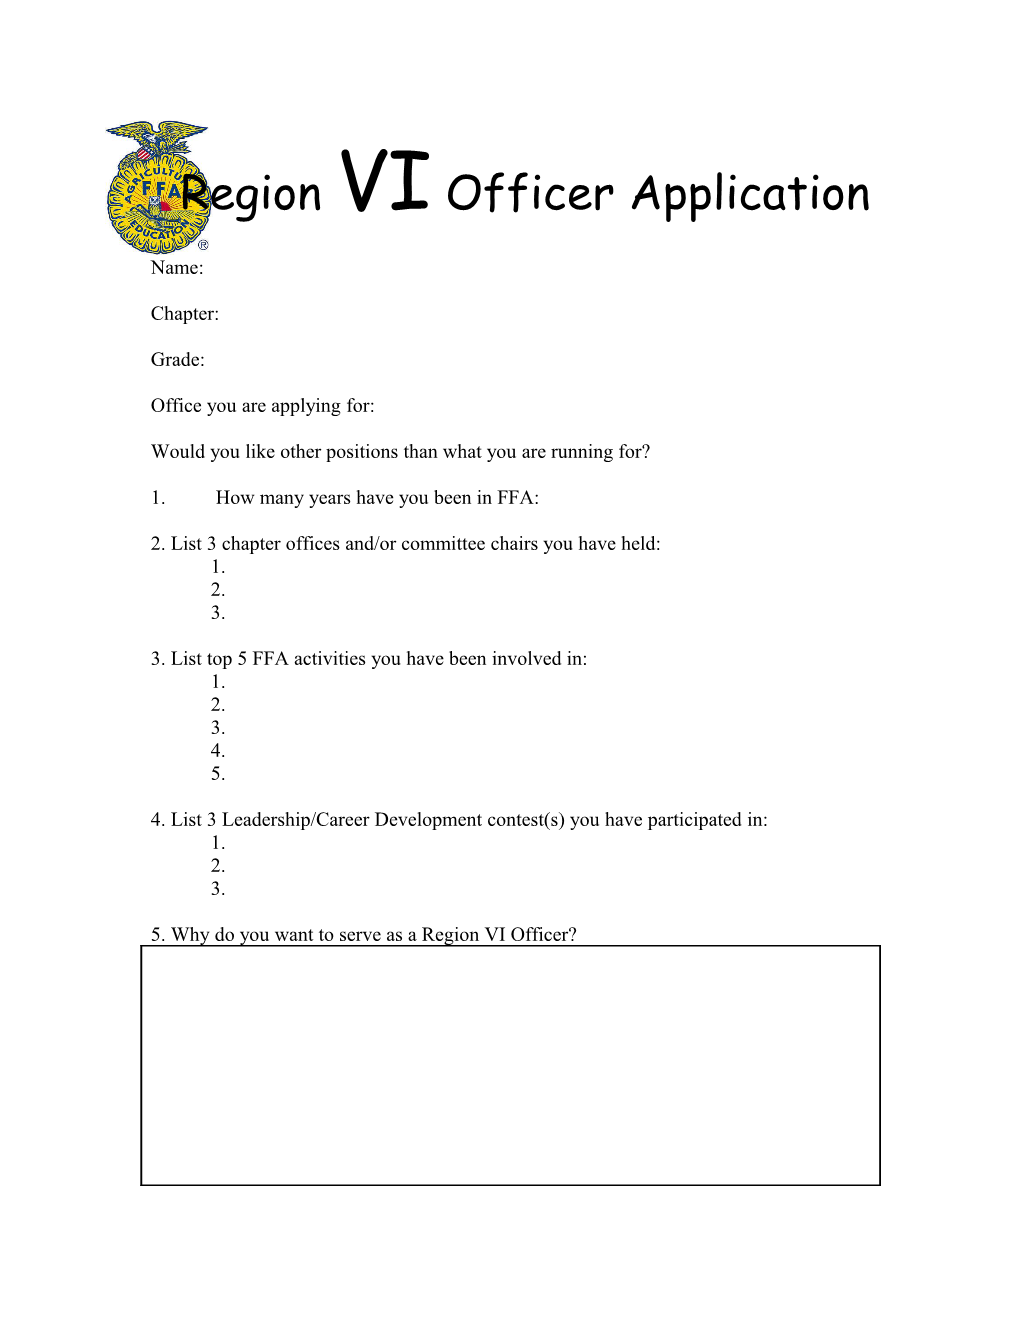 Region VI Officer Application